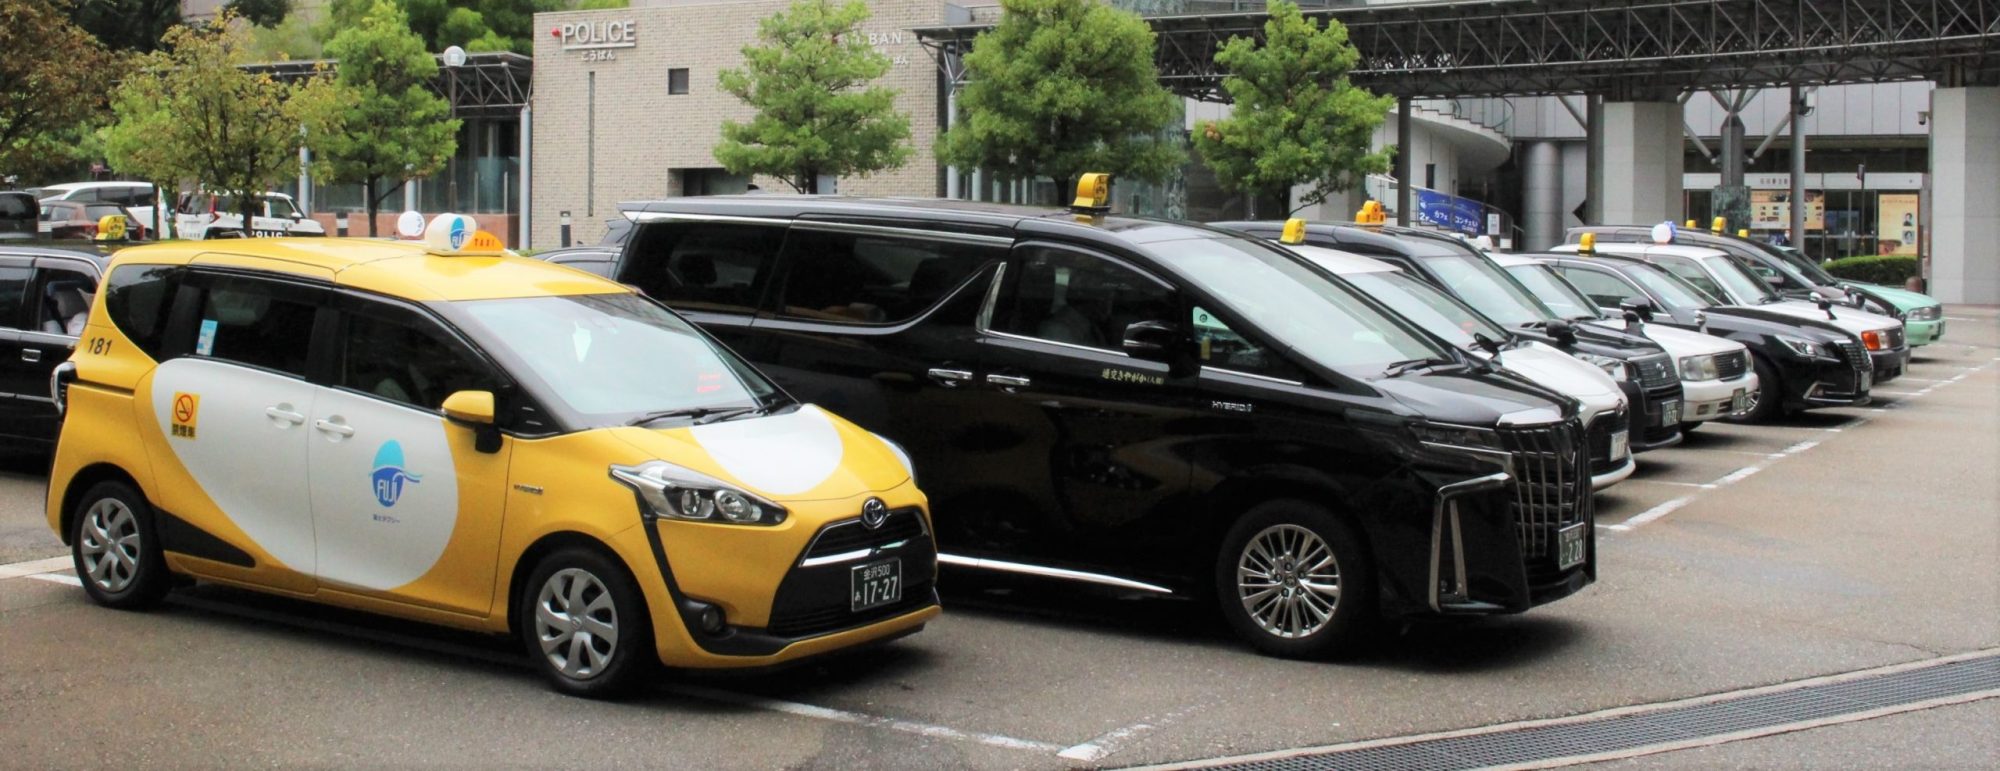 石川交通は南加賀、能登でタクシー値上げ申請 ／ 初乗り1.1㎞650円、実質2割弱の引き上げ ／ 23年春にも改定